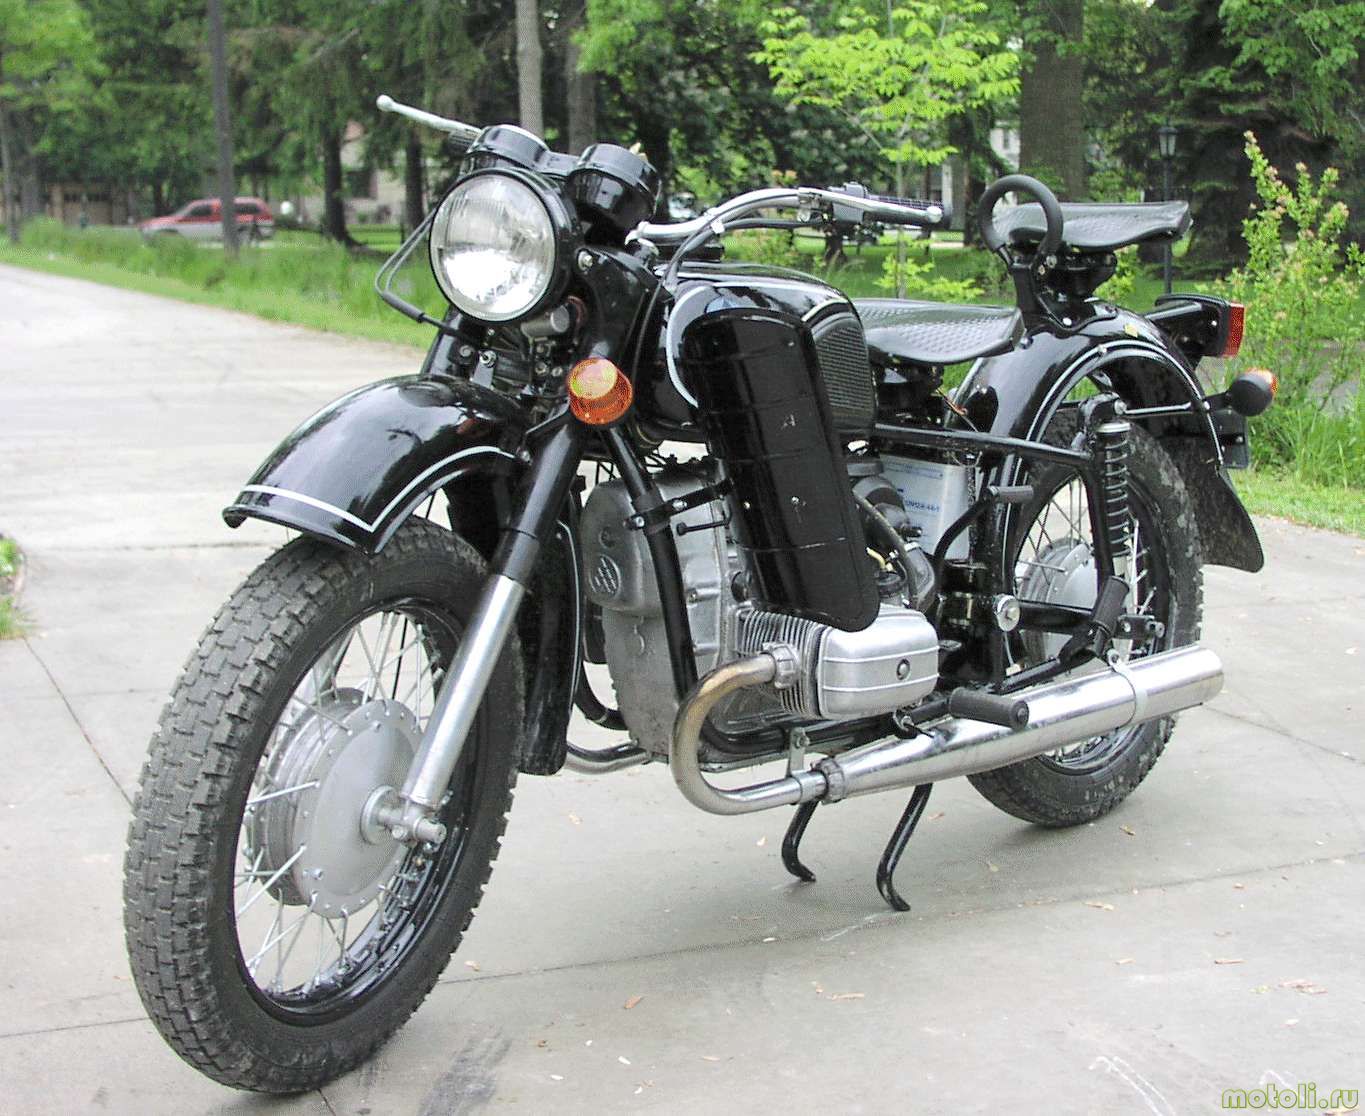 Ремонт мотоциклов в г. Истра – быстро, качественно, надежно